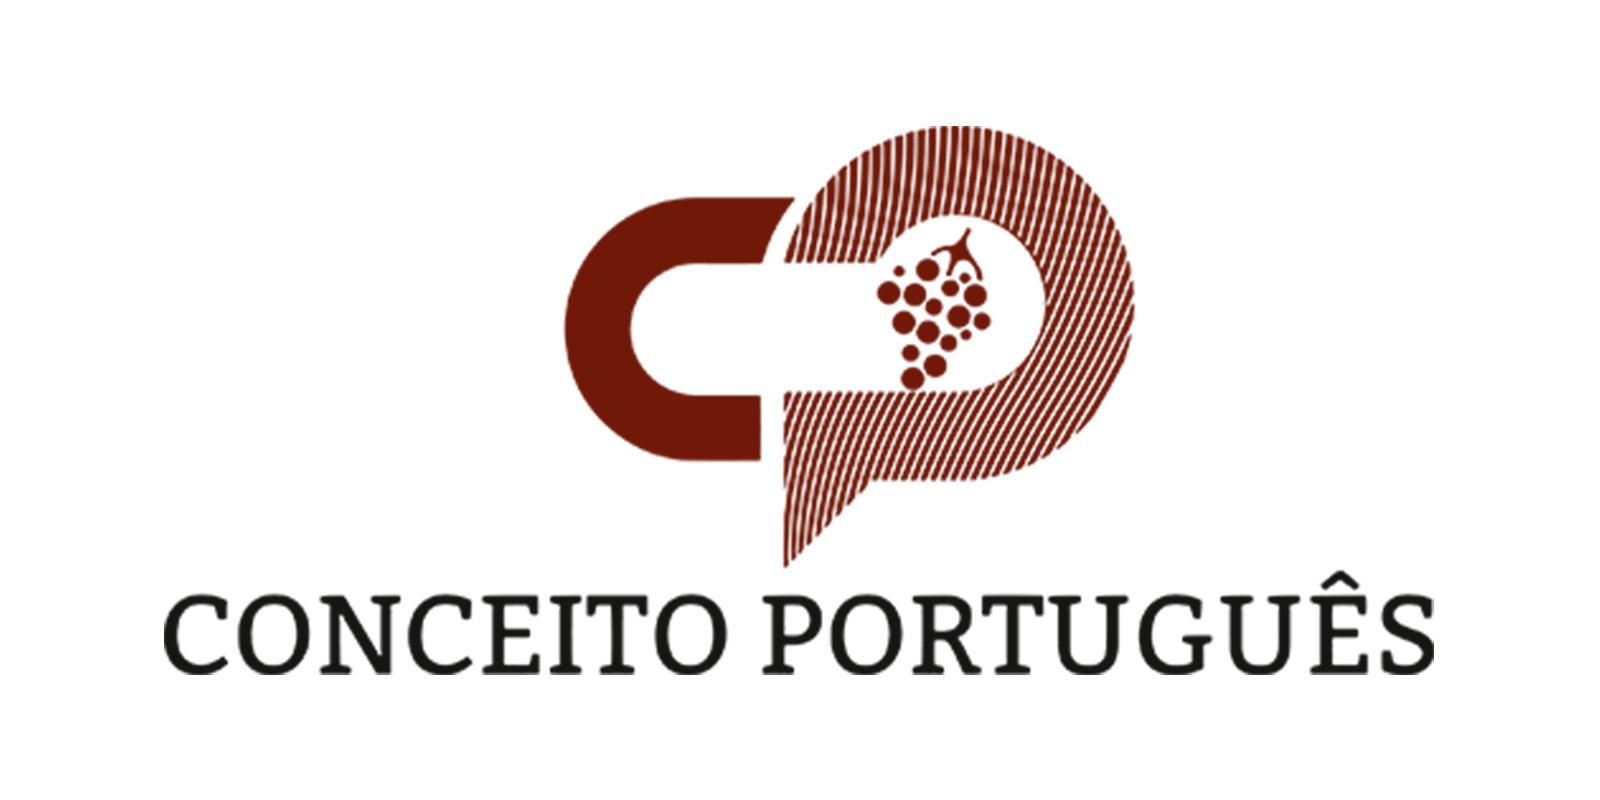 Conceito Português